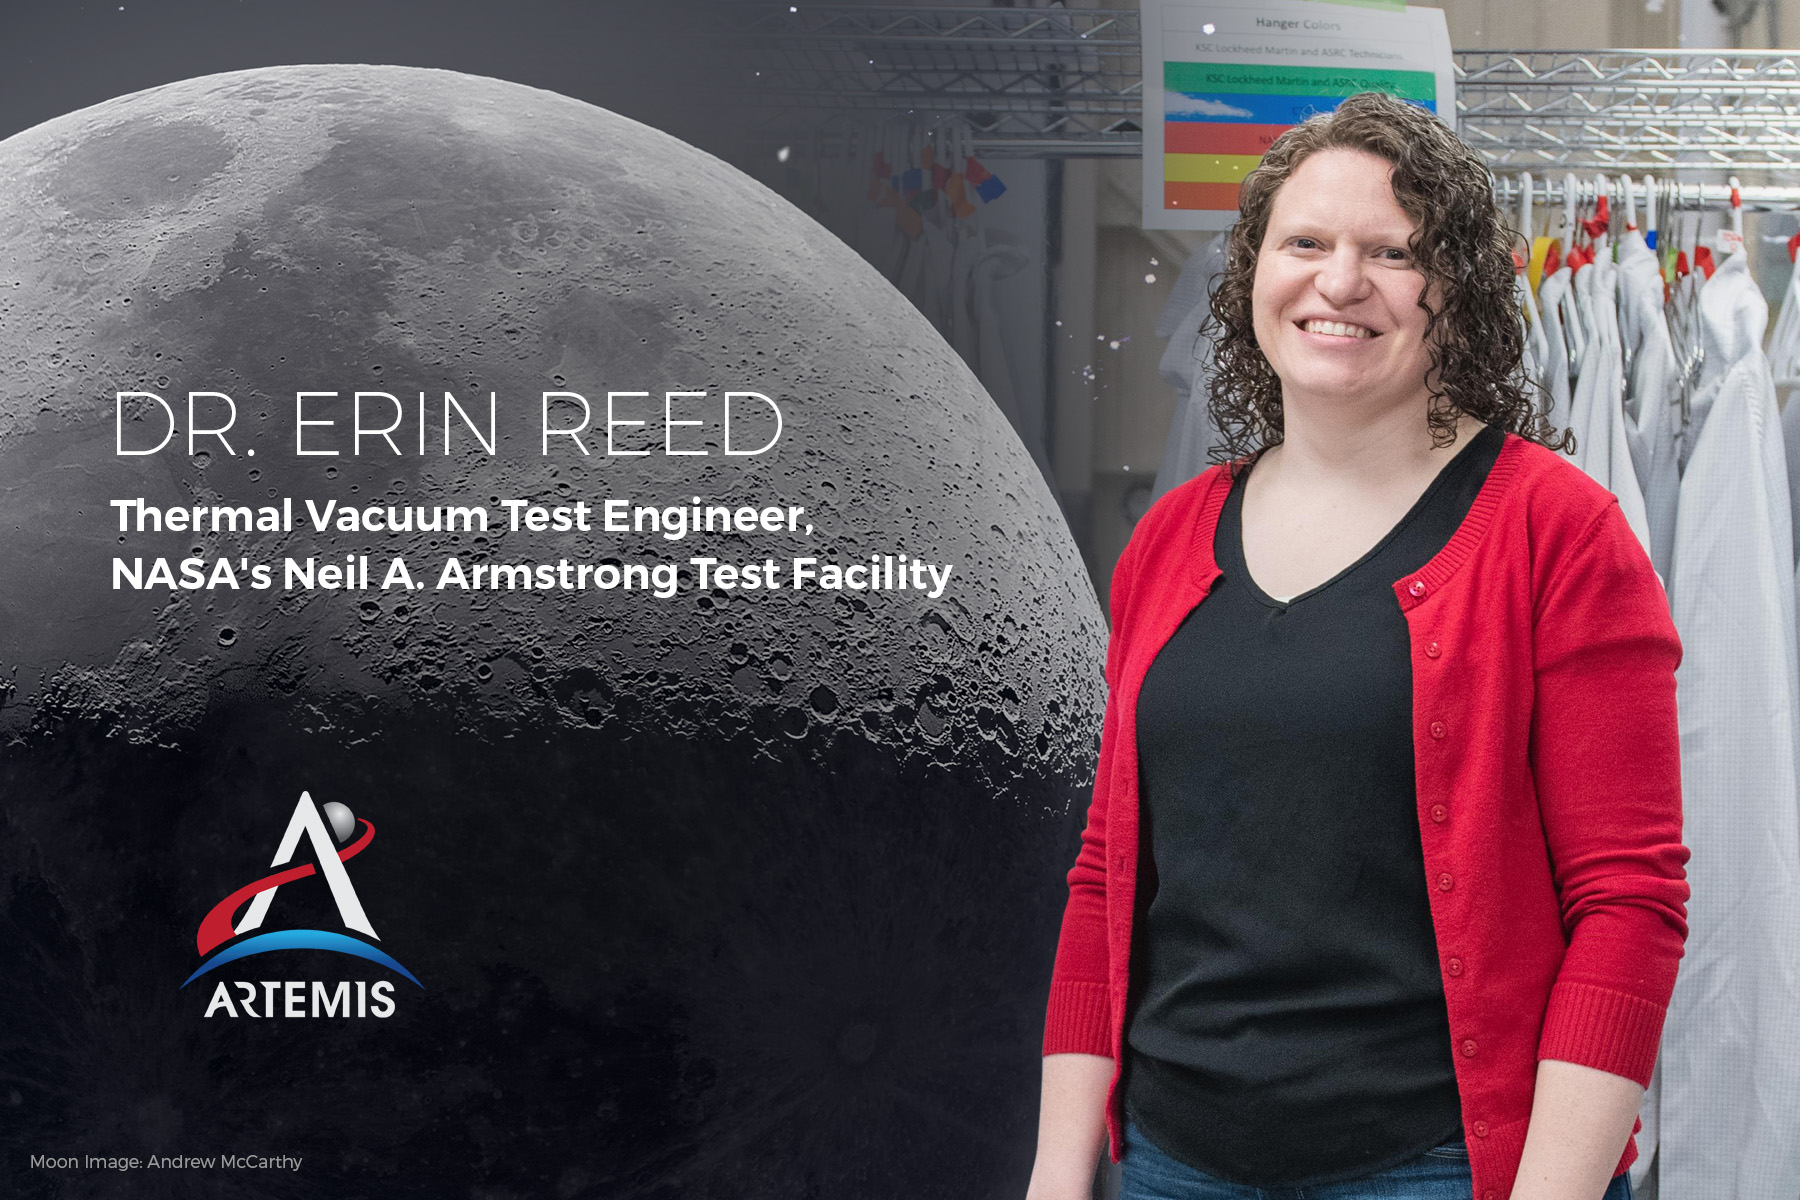 I am Artemis: Dr. Erin Reed